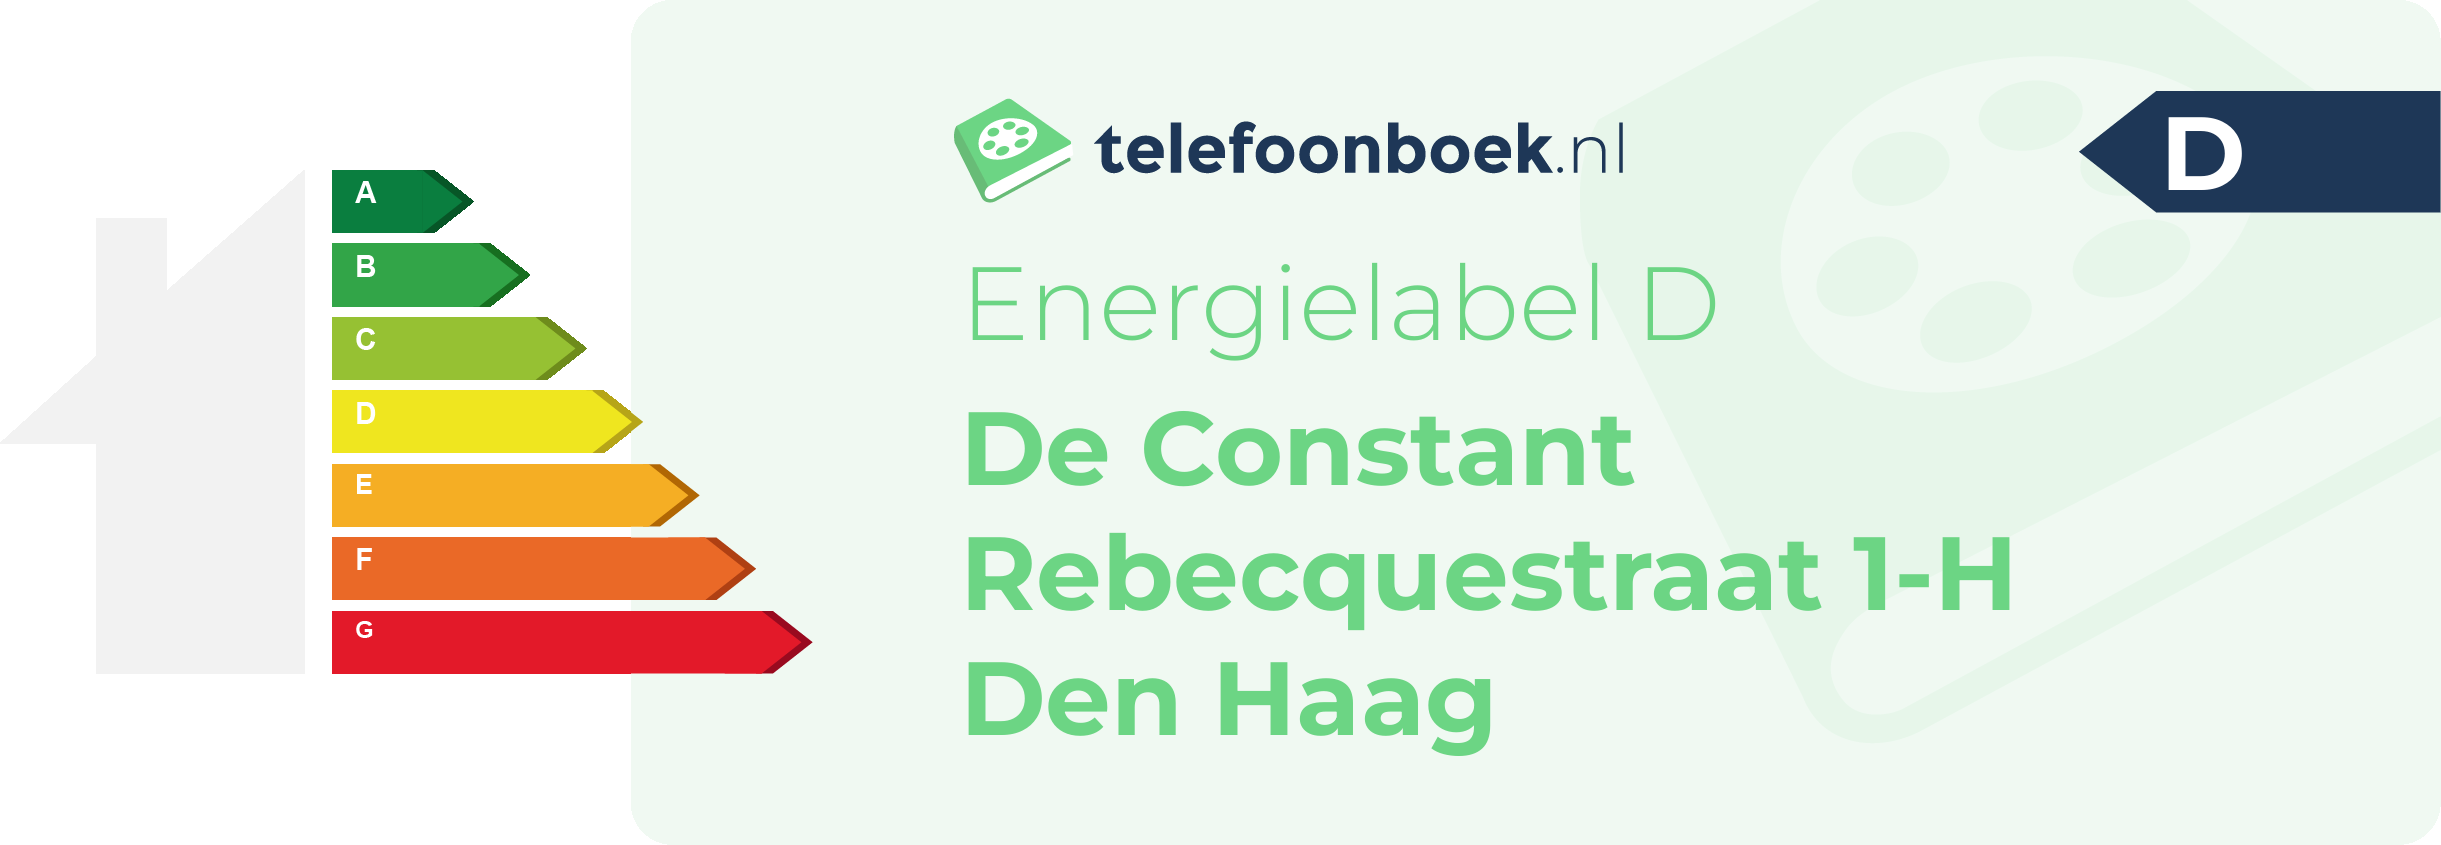 Energielabel De Constant Rebecquestraat 1-H Den Haag